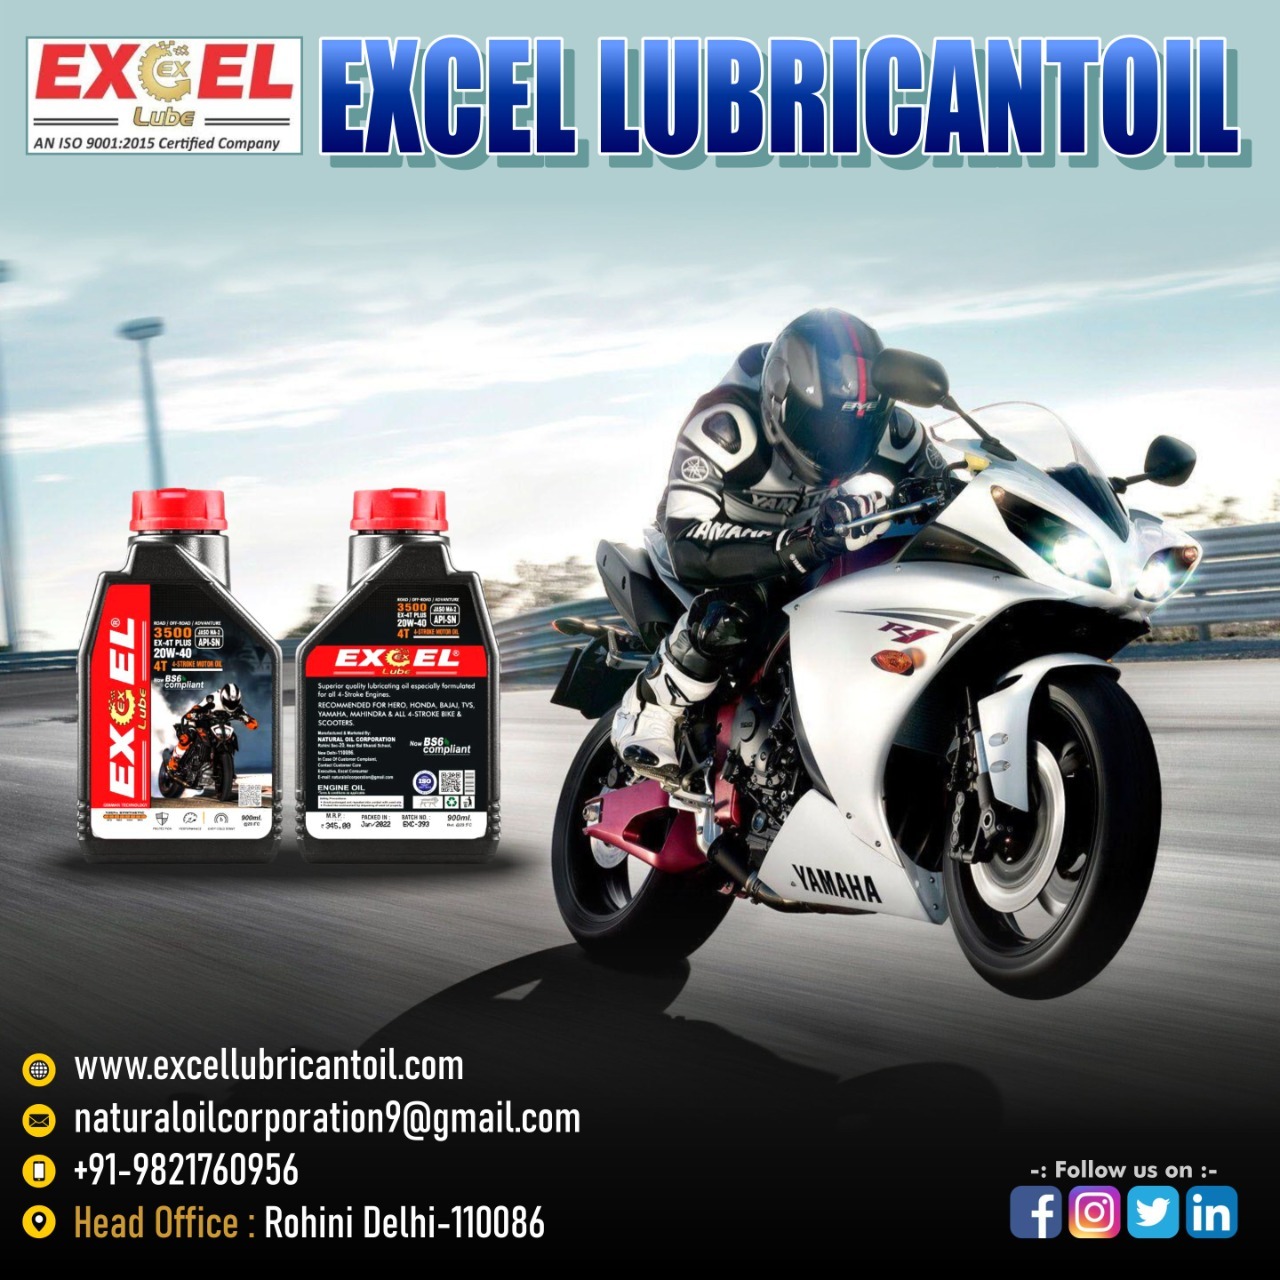 Motorcycle Engine Oil bike 4t